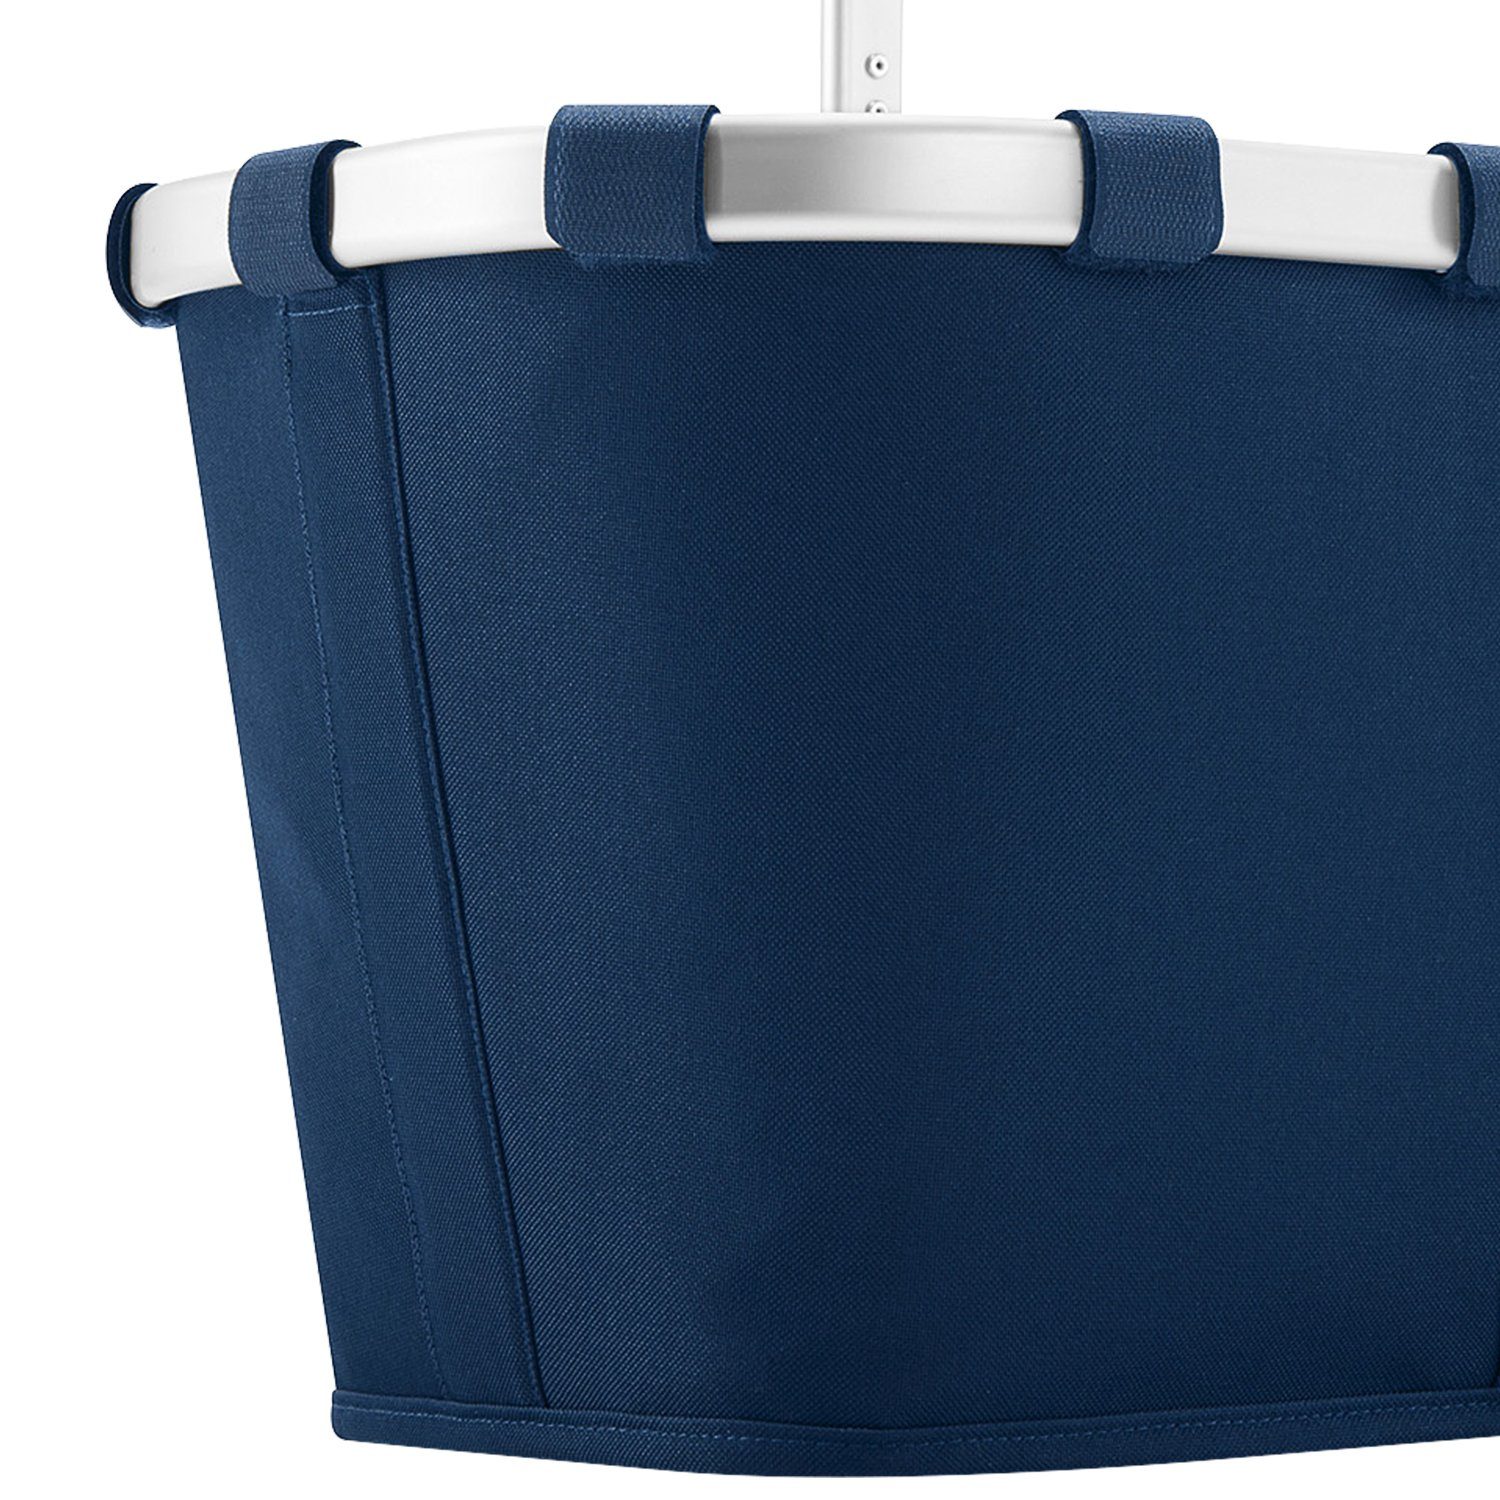 REISENTHEL® Einkaufskorb carrybag Einkaufskorb 22 blue Dekorauswahl, L Henkelkorb 22 l Picknickkorb - dark